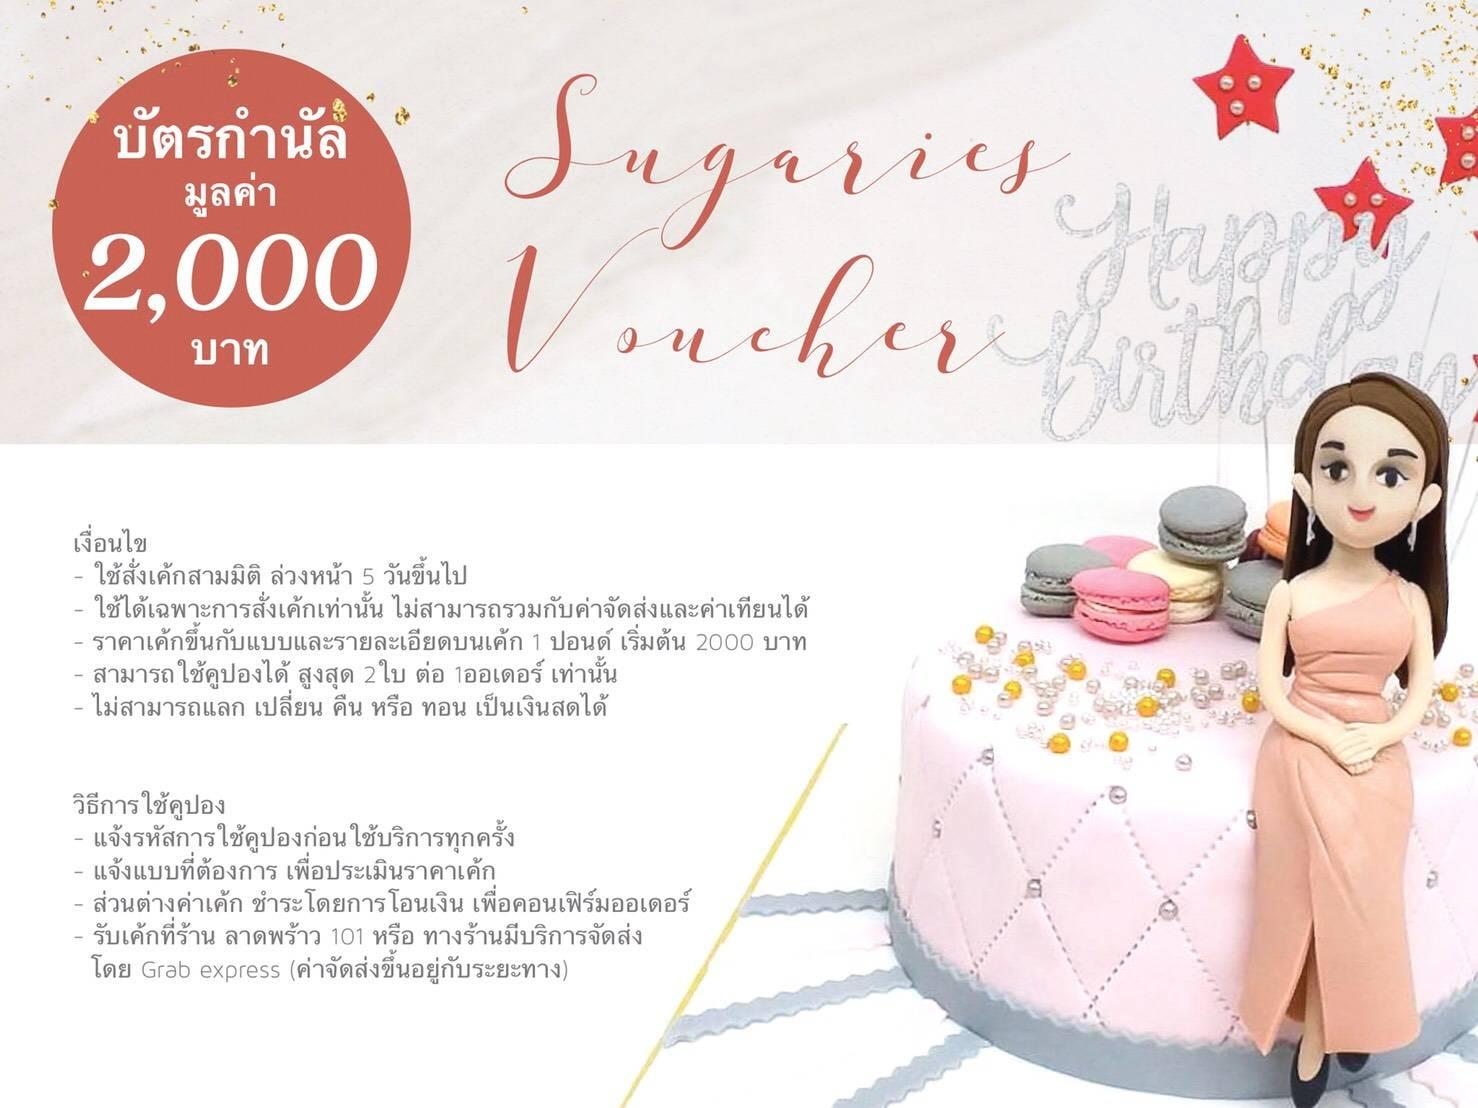 [E-Voucher] ร้านเค้ก Sugaries Station ชูการี่ สเตชั่น มูลค่า 2000 บาท (เค้ก3มิติ, เค้กปั้นน้ำตาล, เค้กวันเกิด,เค้กแต่งงาน)